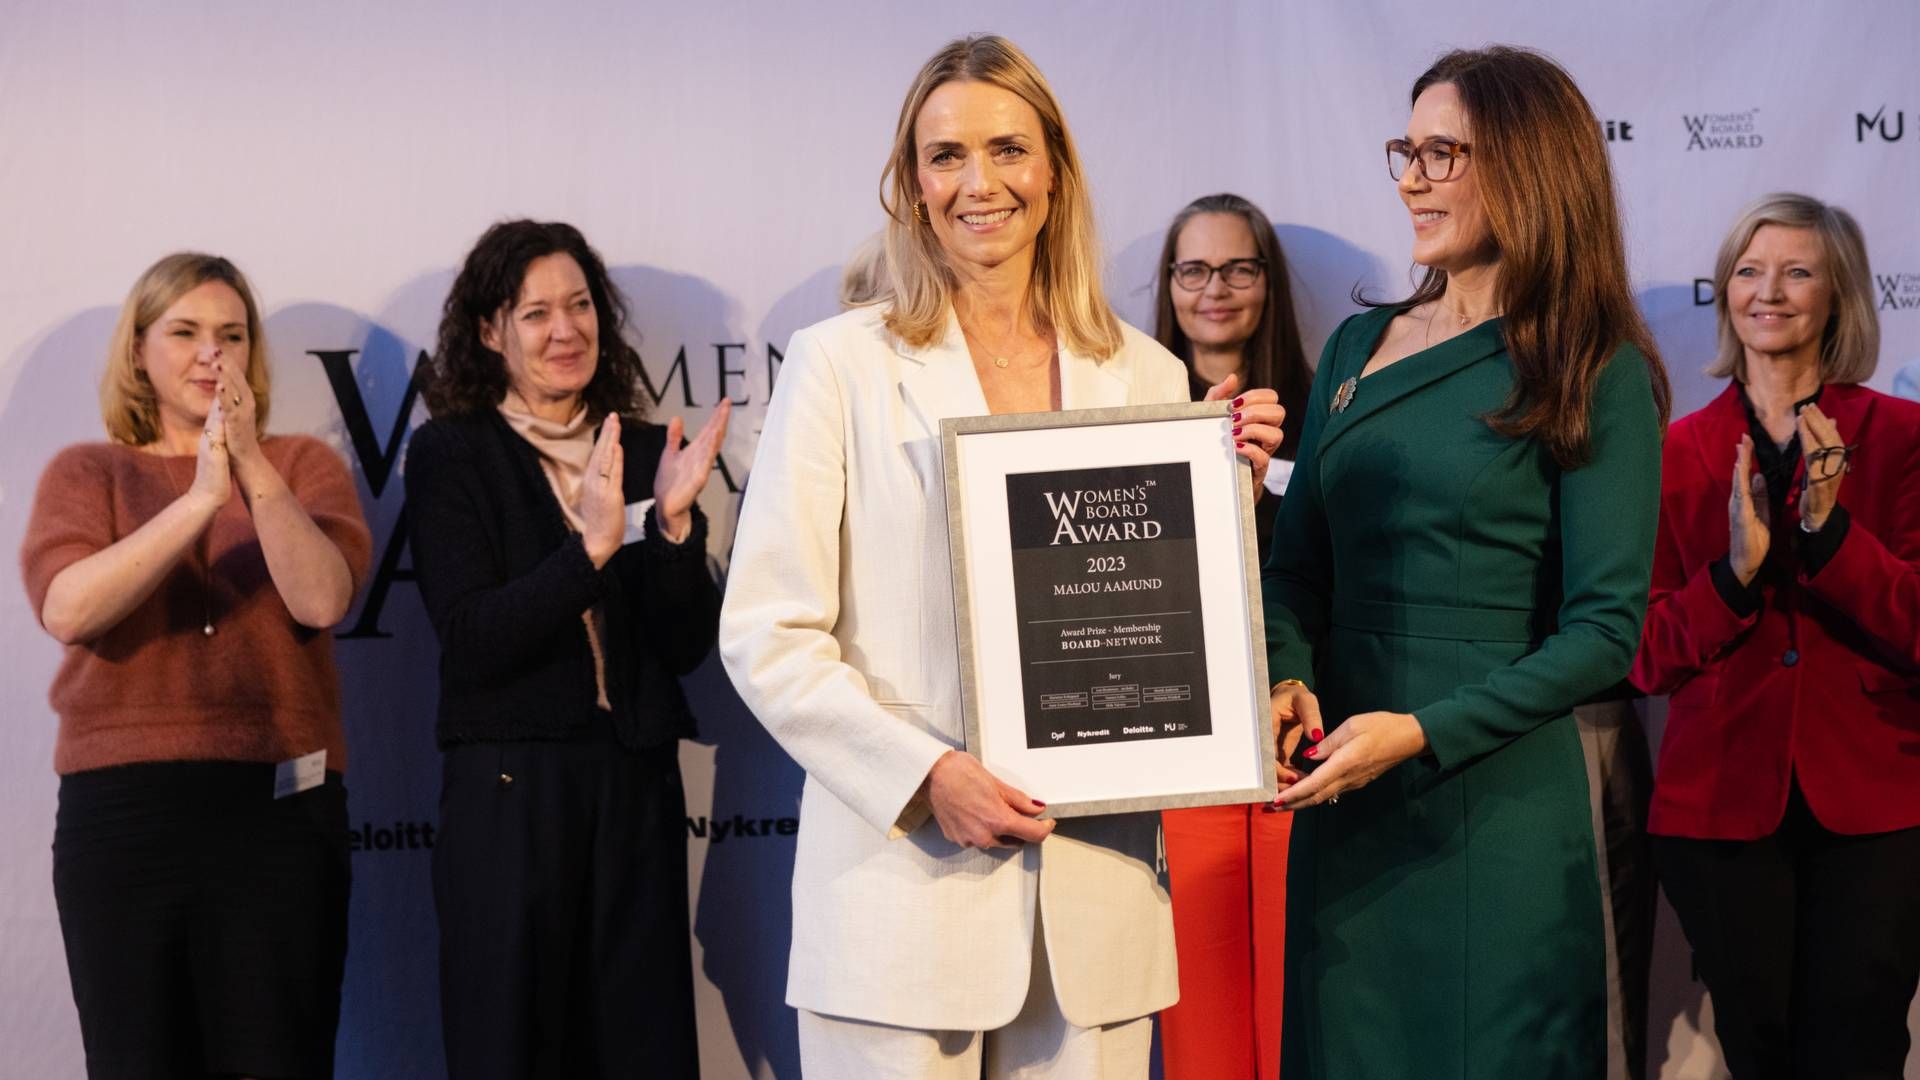 Malou Aamund blev tidligere på året kåret som Danmarks dygtigste kvindelige bestyrelsesmedlem med bestyrelseslederpotentiale - og prisen blev overrakt af Kronprinsesse Mary. | Foto: Gregers Tycho/Ritzau Scanpix